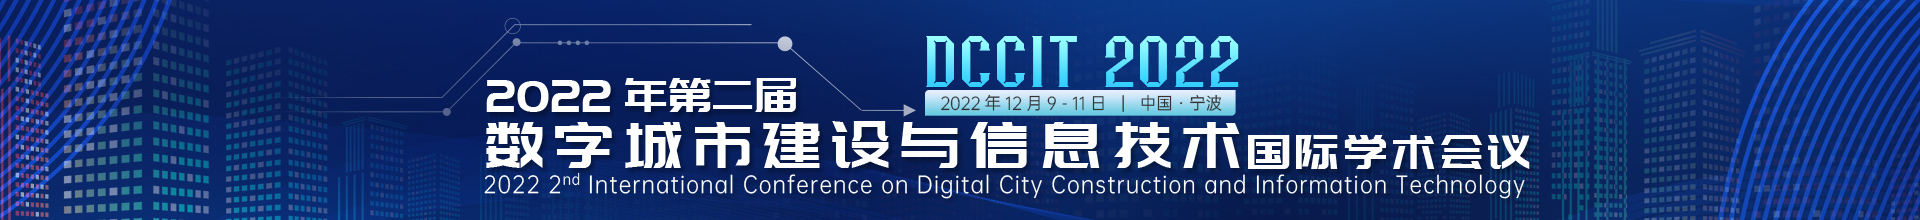 12月-宁波-DCCIT-学术会议云-尹旭舟20220614.jpg